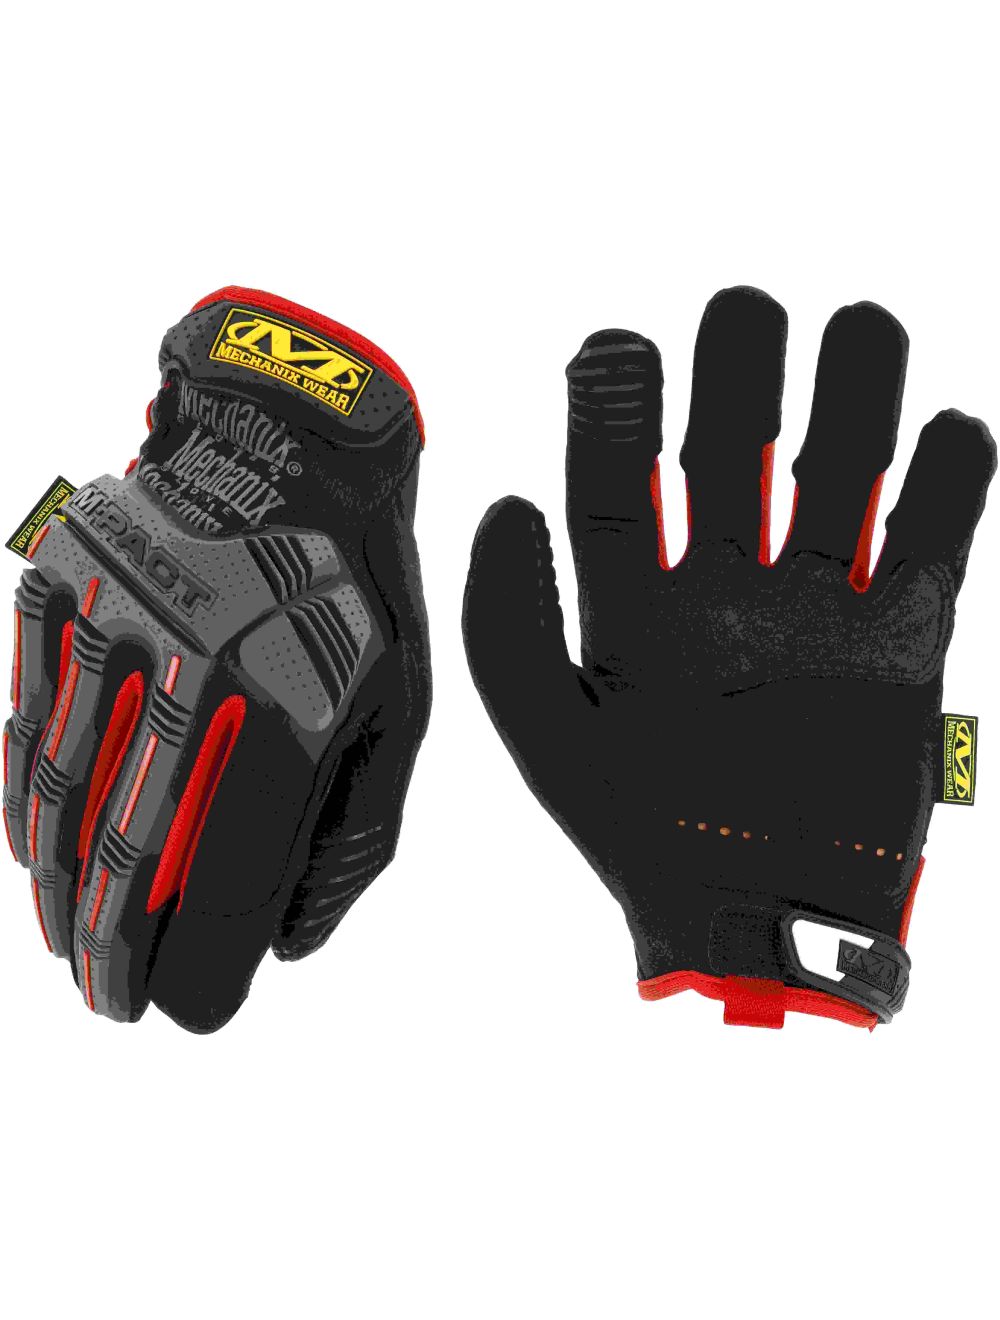 M-Pact Glove